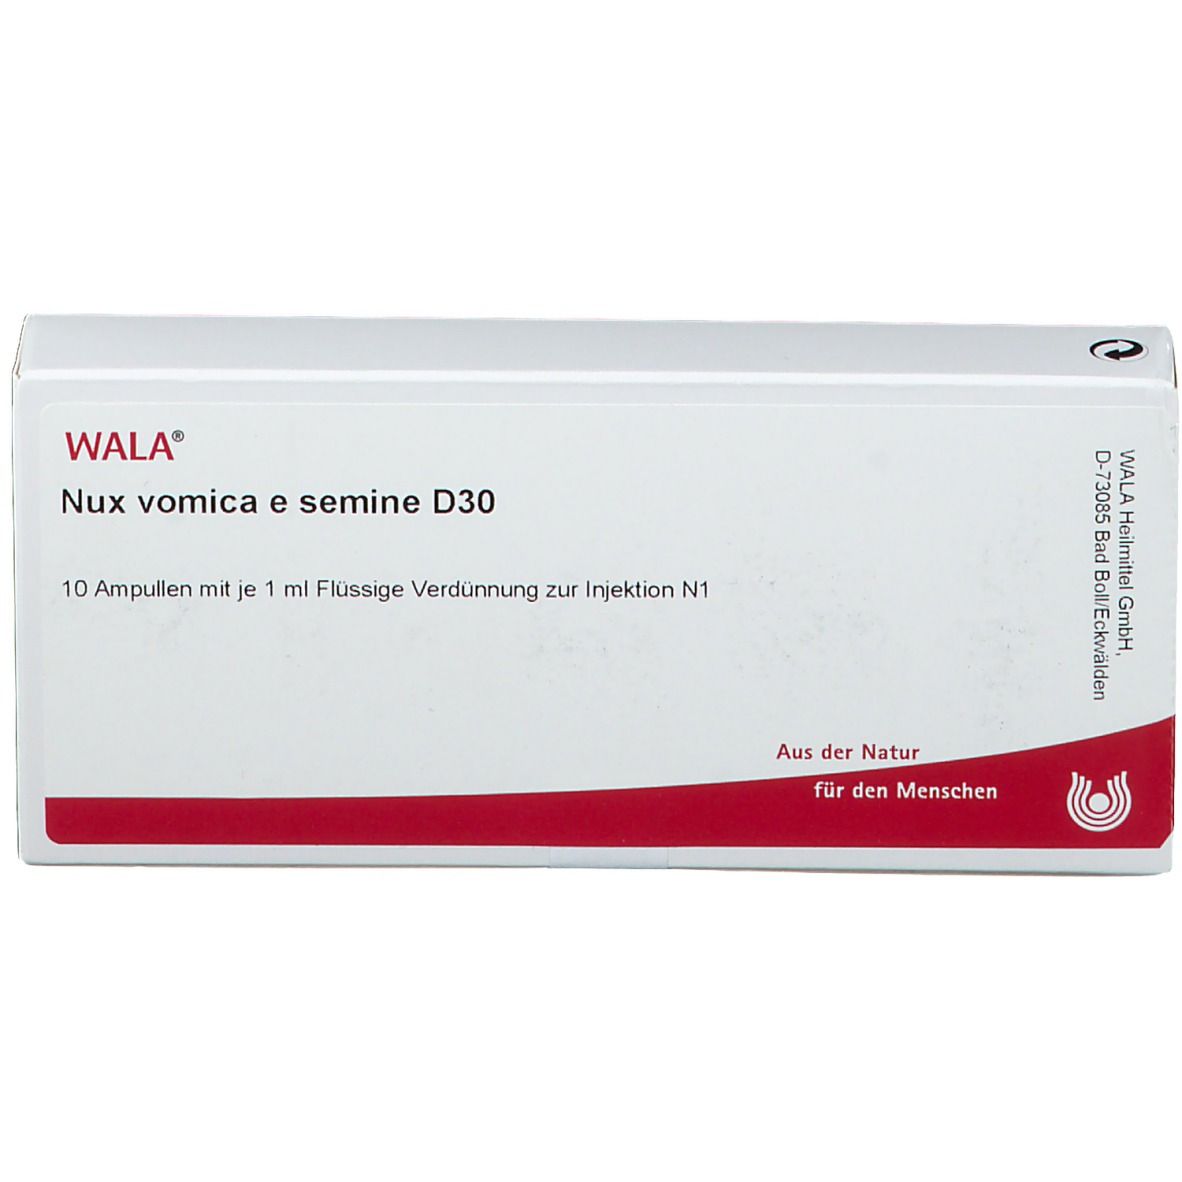 WALA® Nux vomica e semine D 30